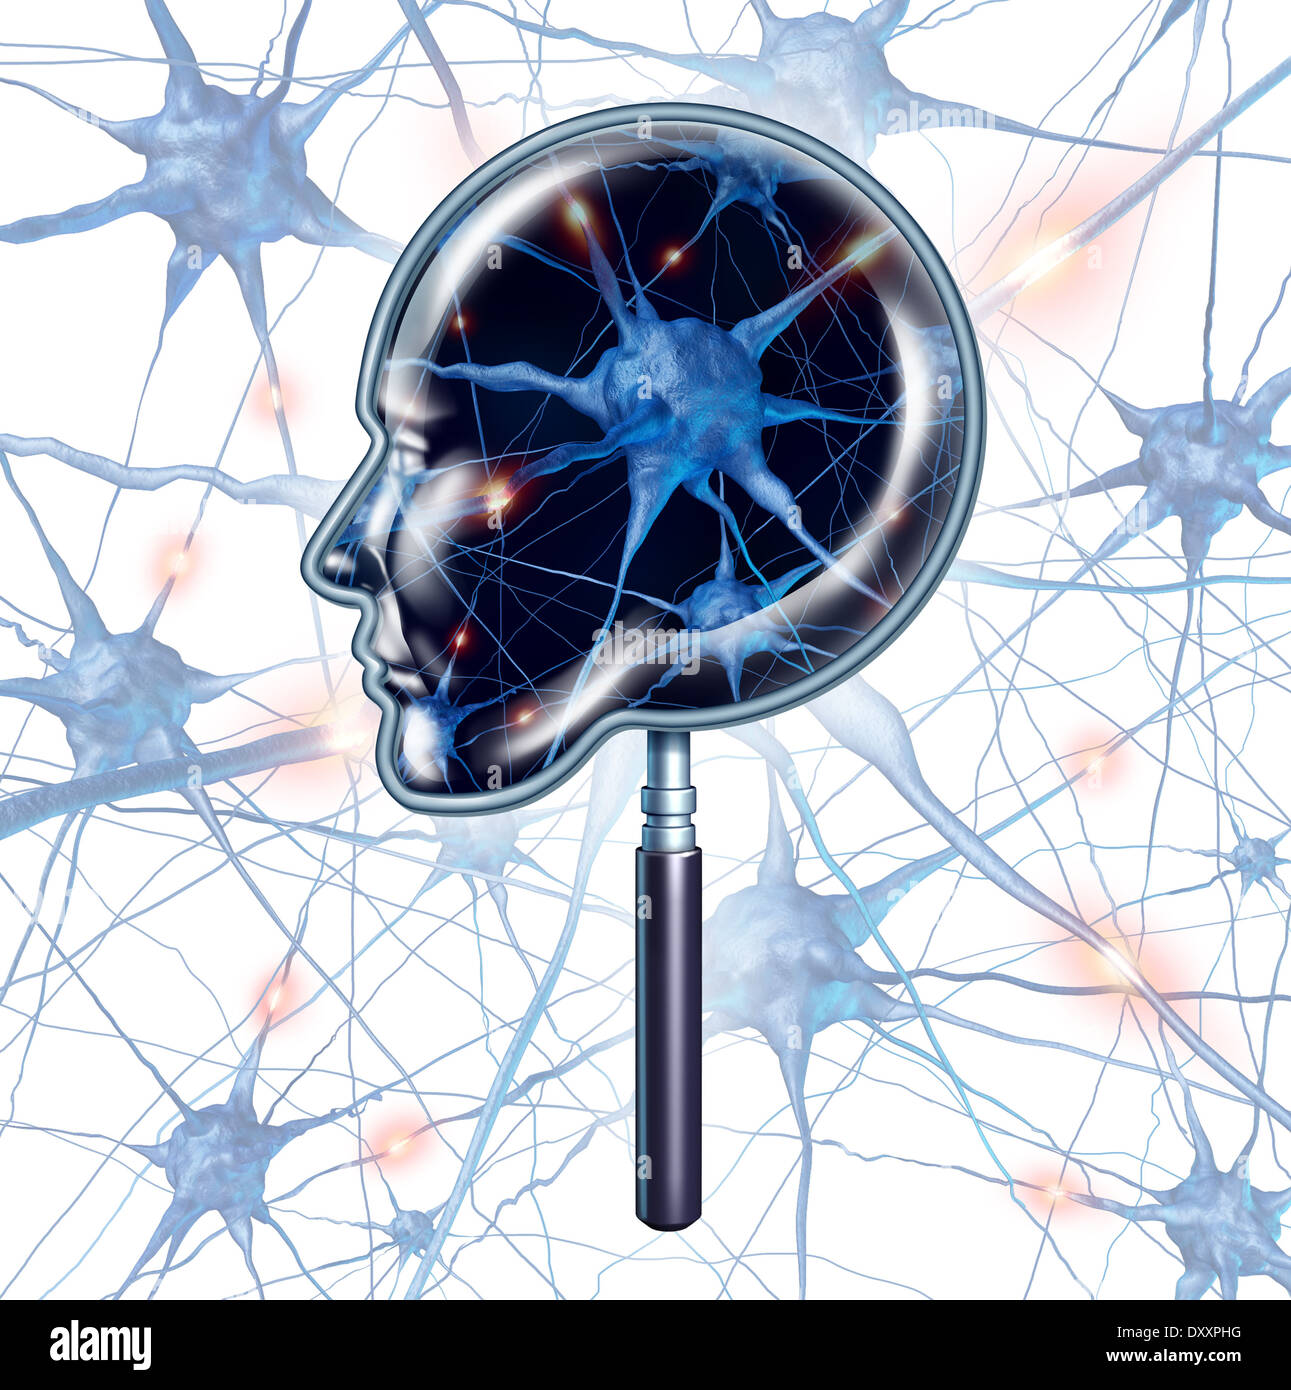 Esame encefalo simbolo medico rappresentato da una lente di ingrandimento a forma di una testa umana come una chiusura del 3d funzione neuronale e organo Foto Stock